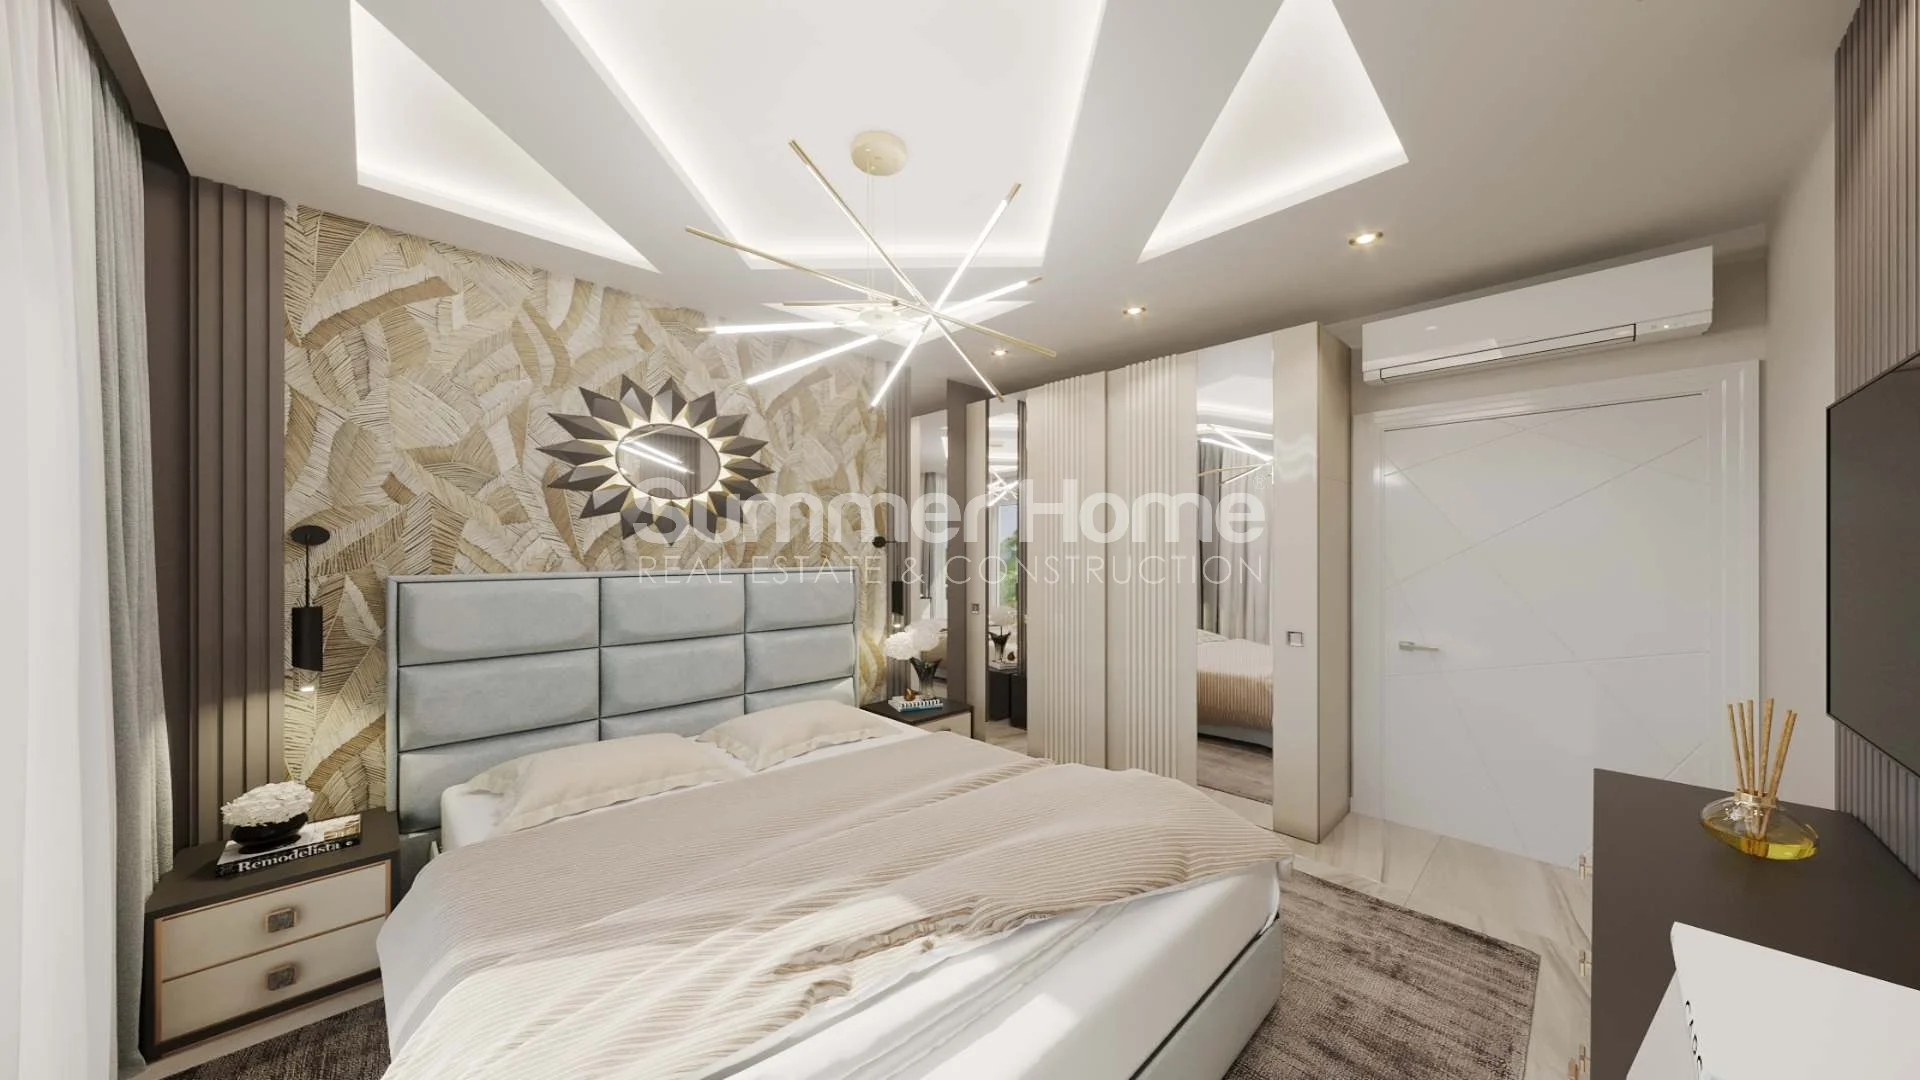 Classy, Chic Apartments in Demirtas interior - 17